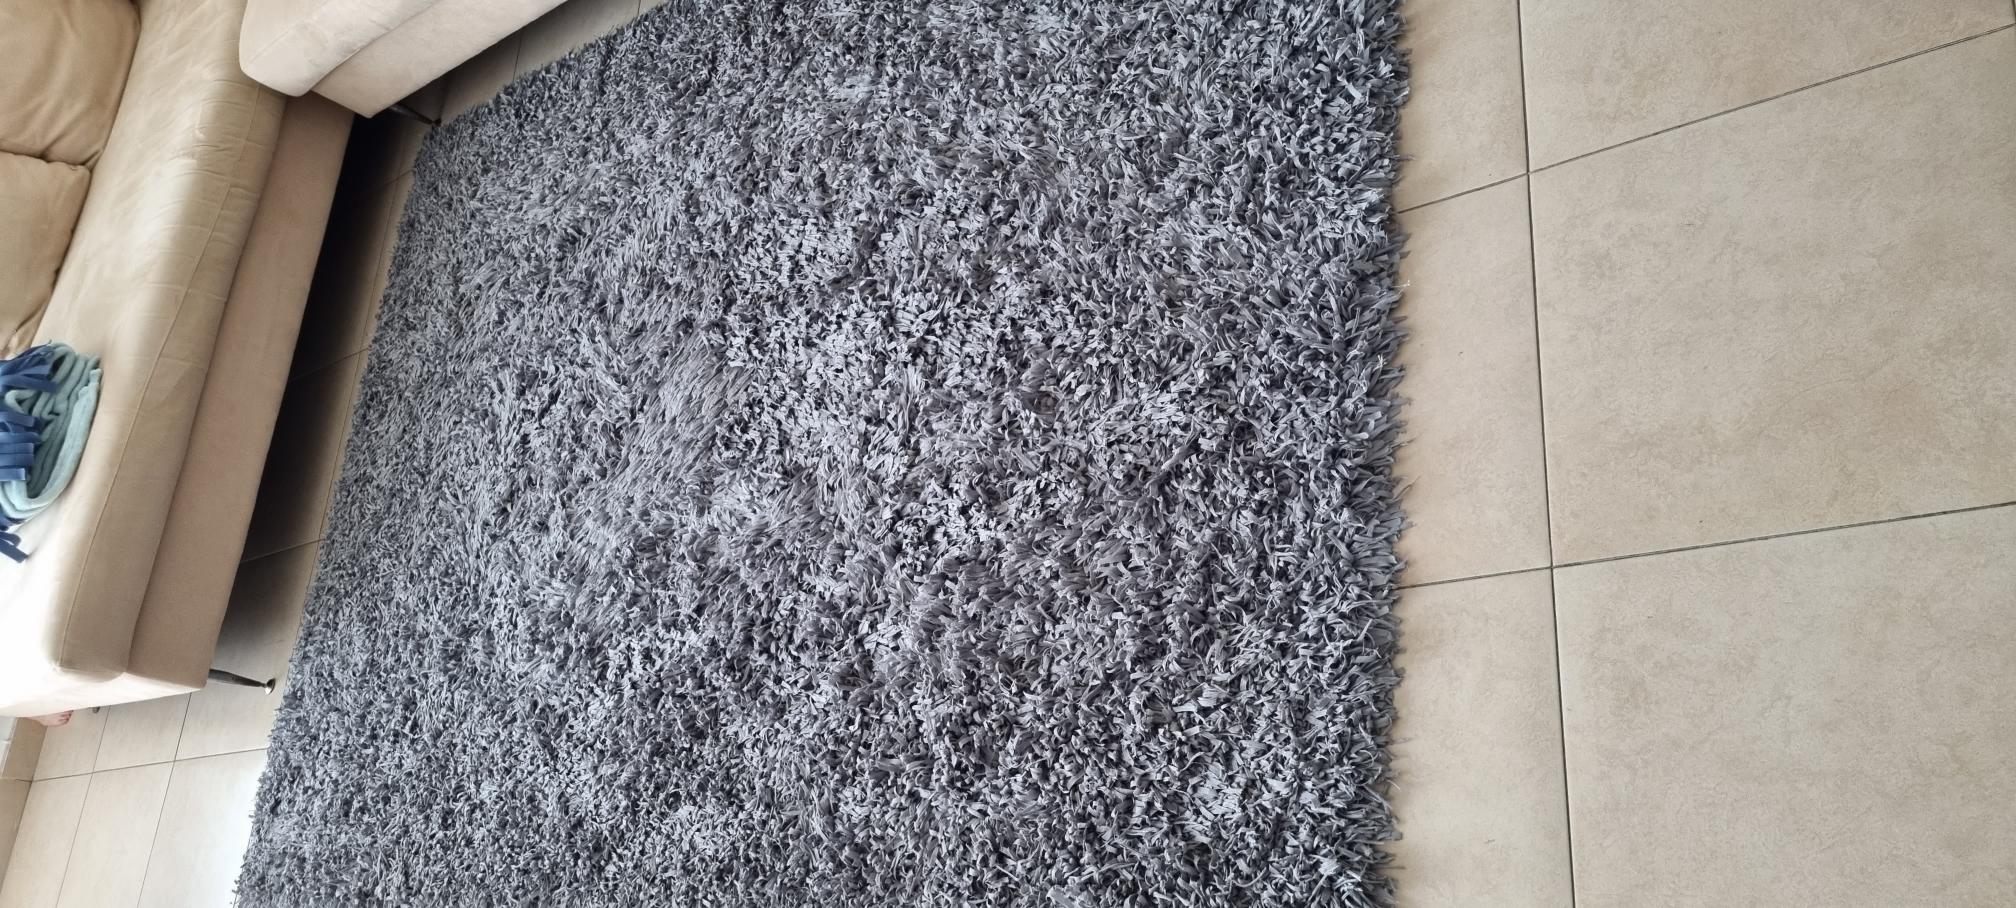 תמונה 2 ,שטיח 2.40*1.70  אפור למכירה בהרצליה ריהוט  שטיחים